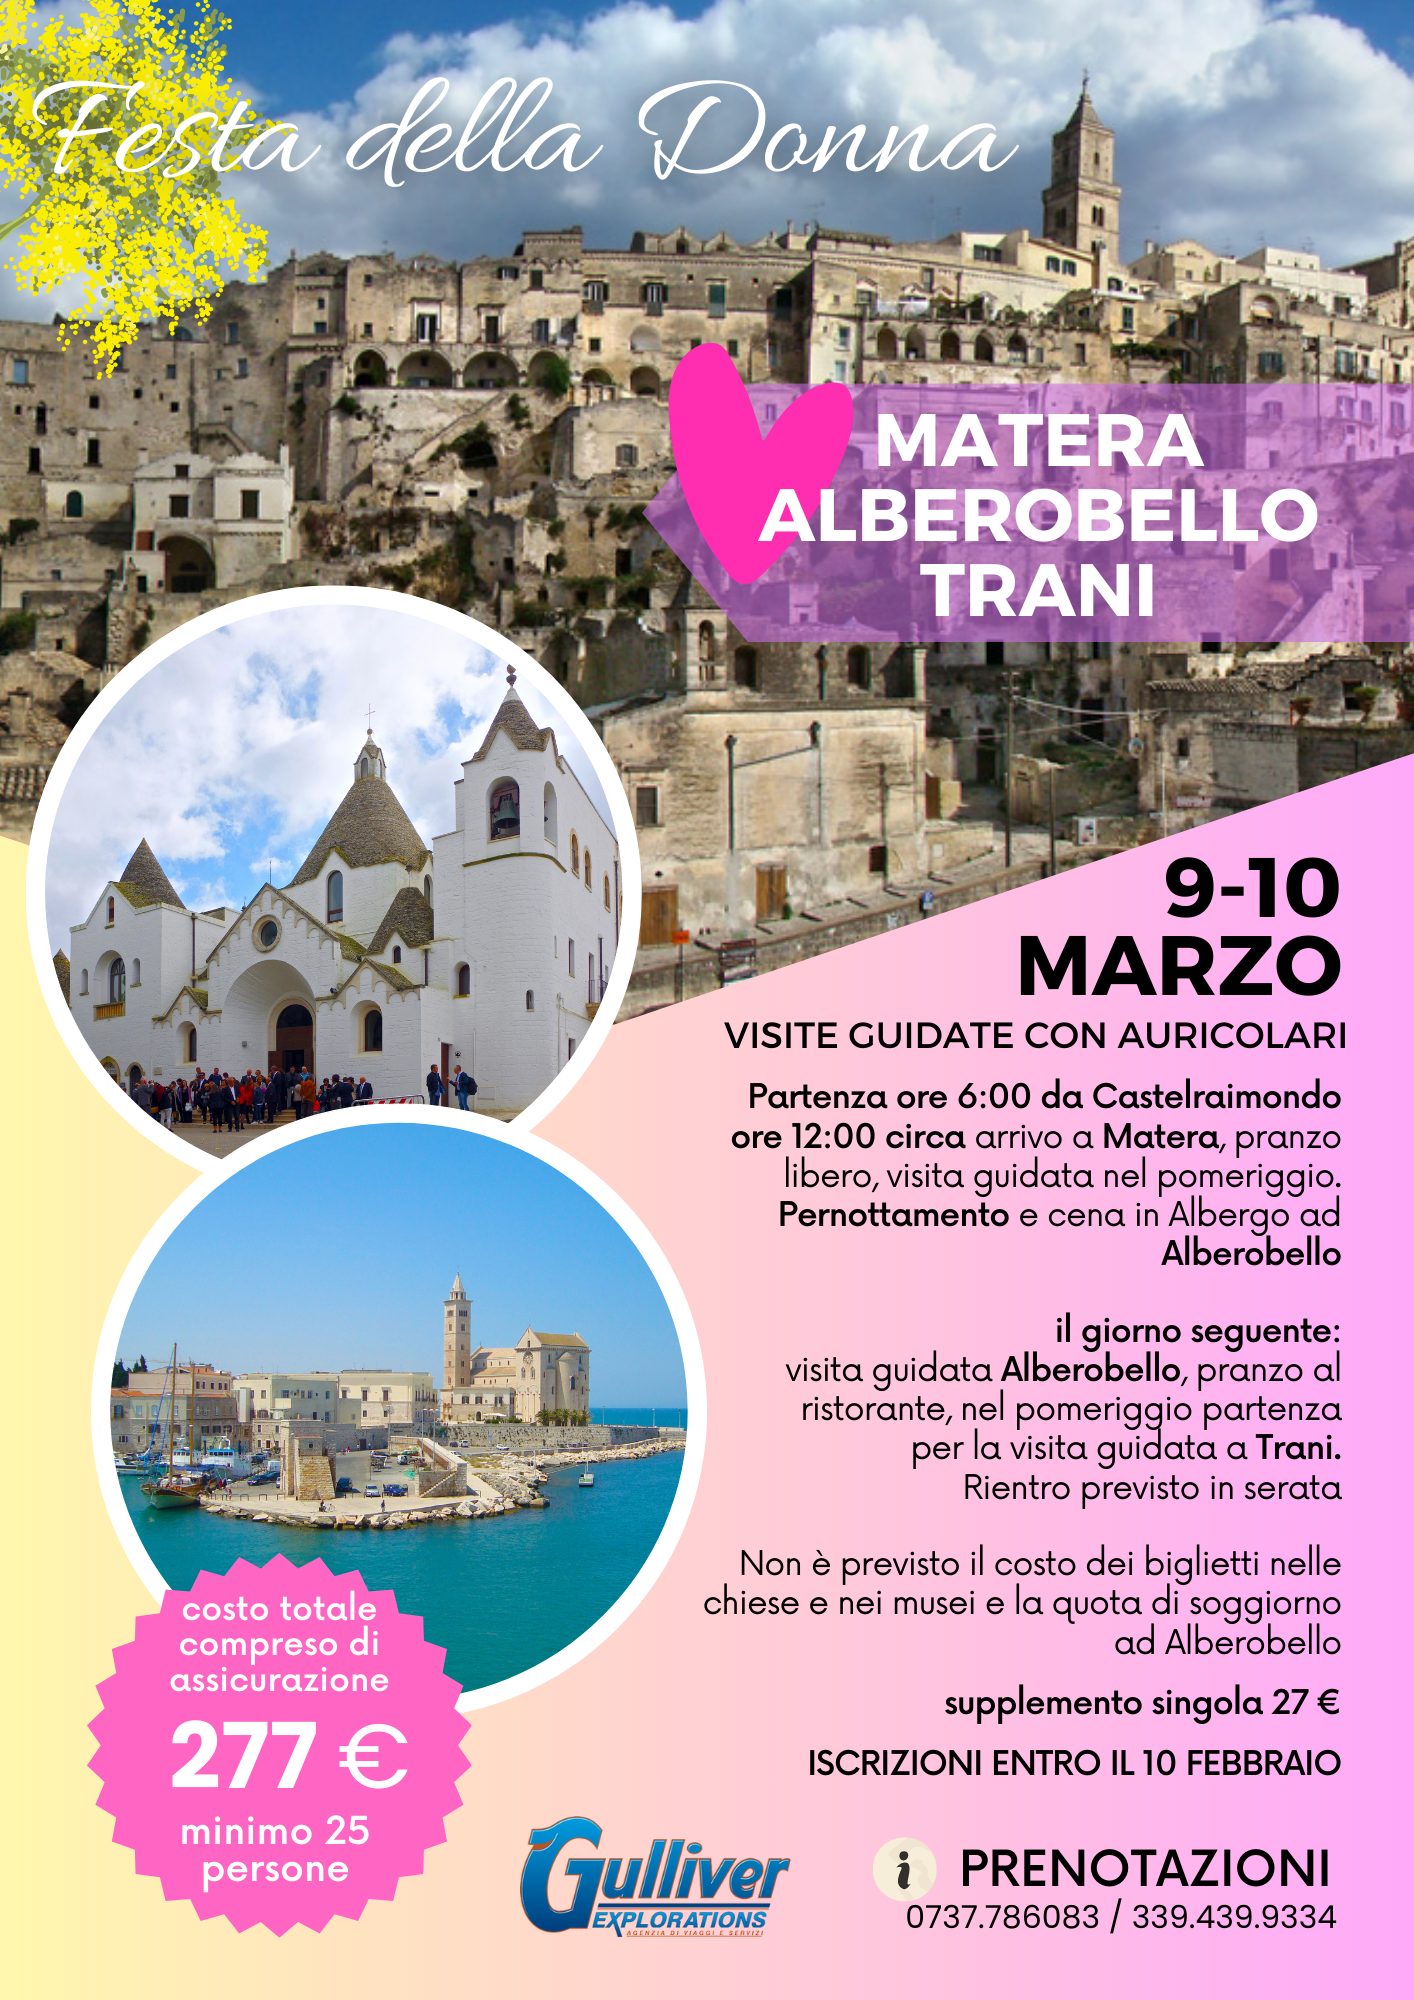 Matera, Alberobello, Trani, Festa della donna